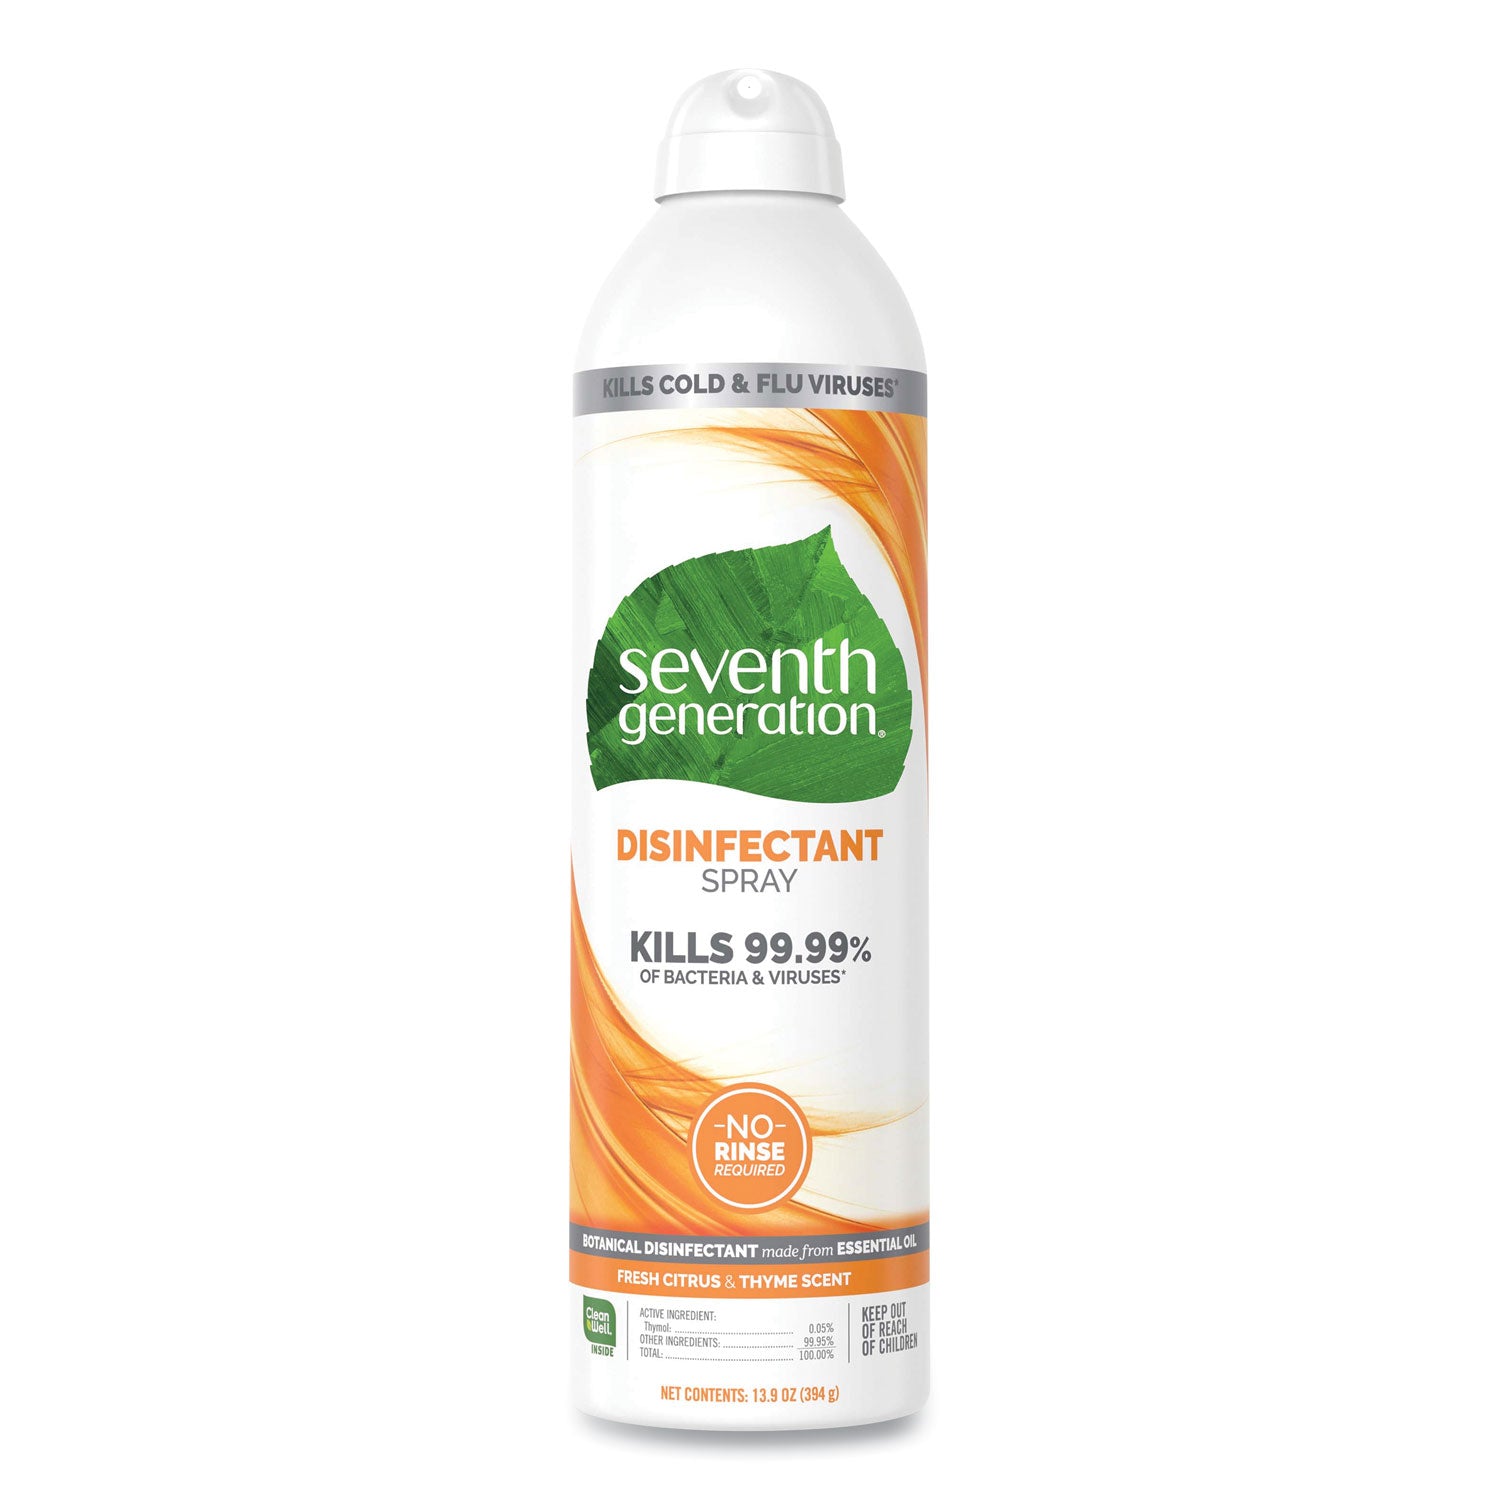 disinfectant-sprays-fresh-citrus-thyme-139-oz-spray-bottle_sev22980ea - 1